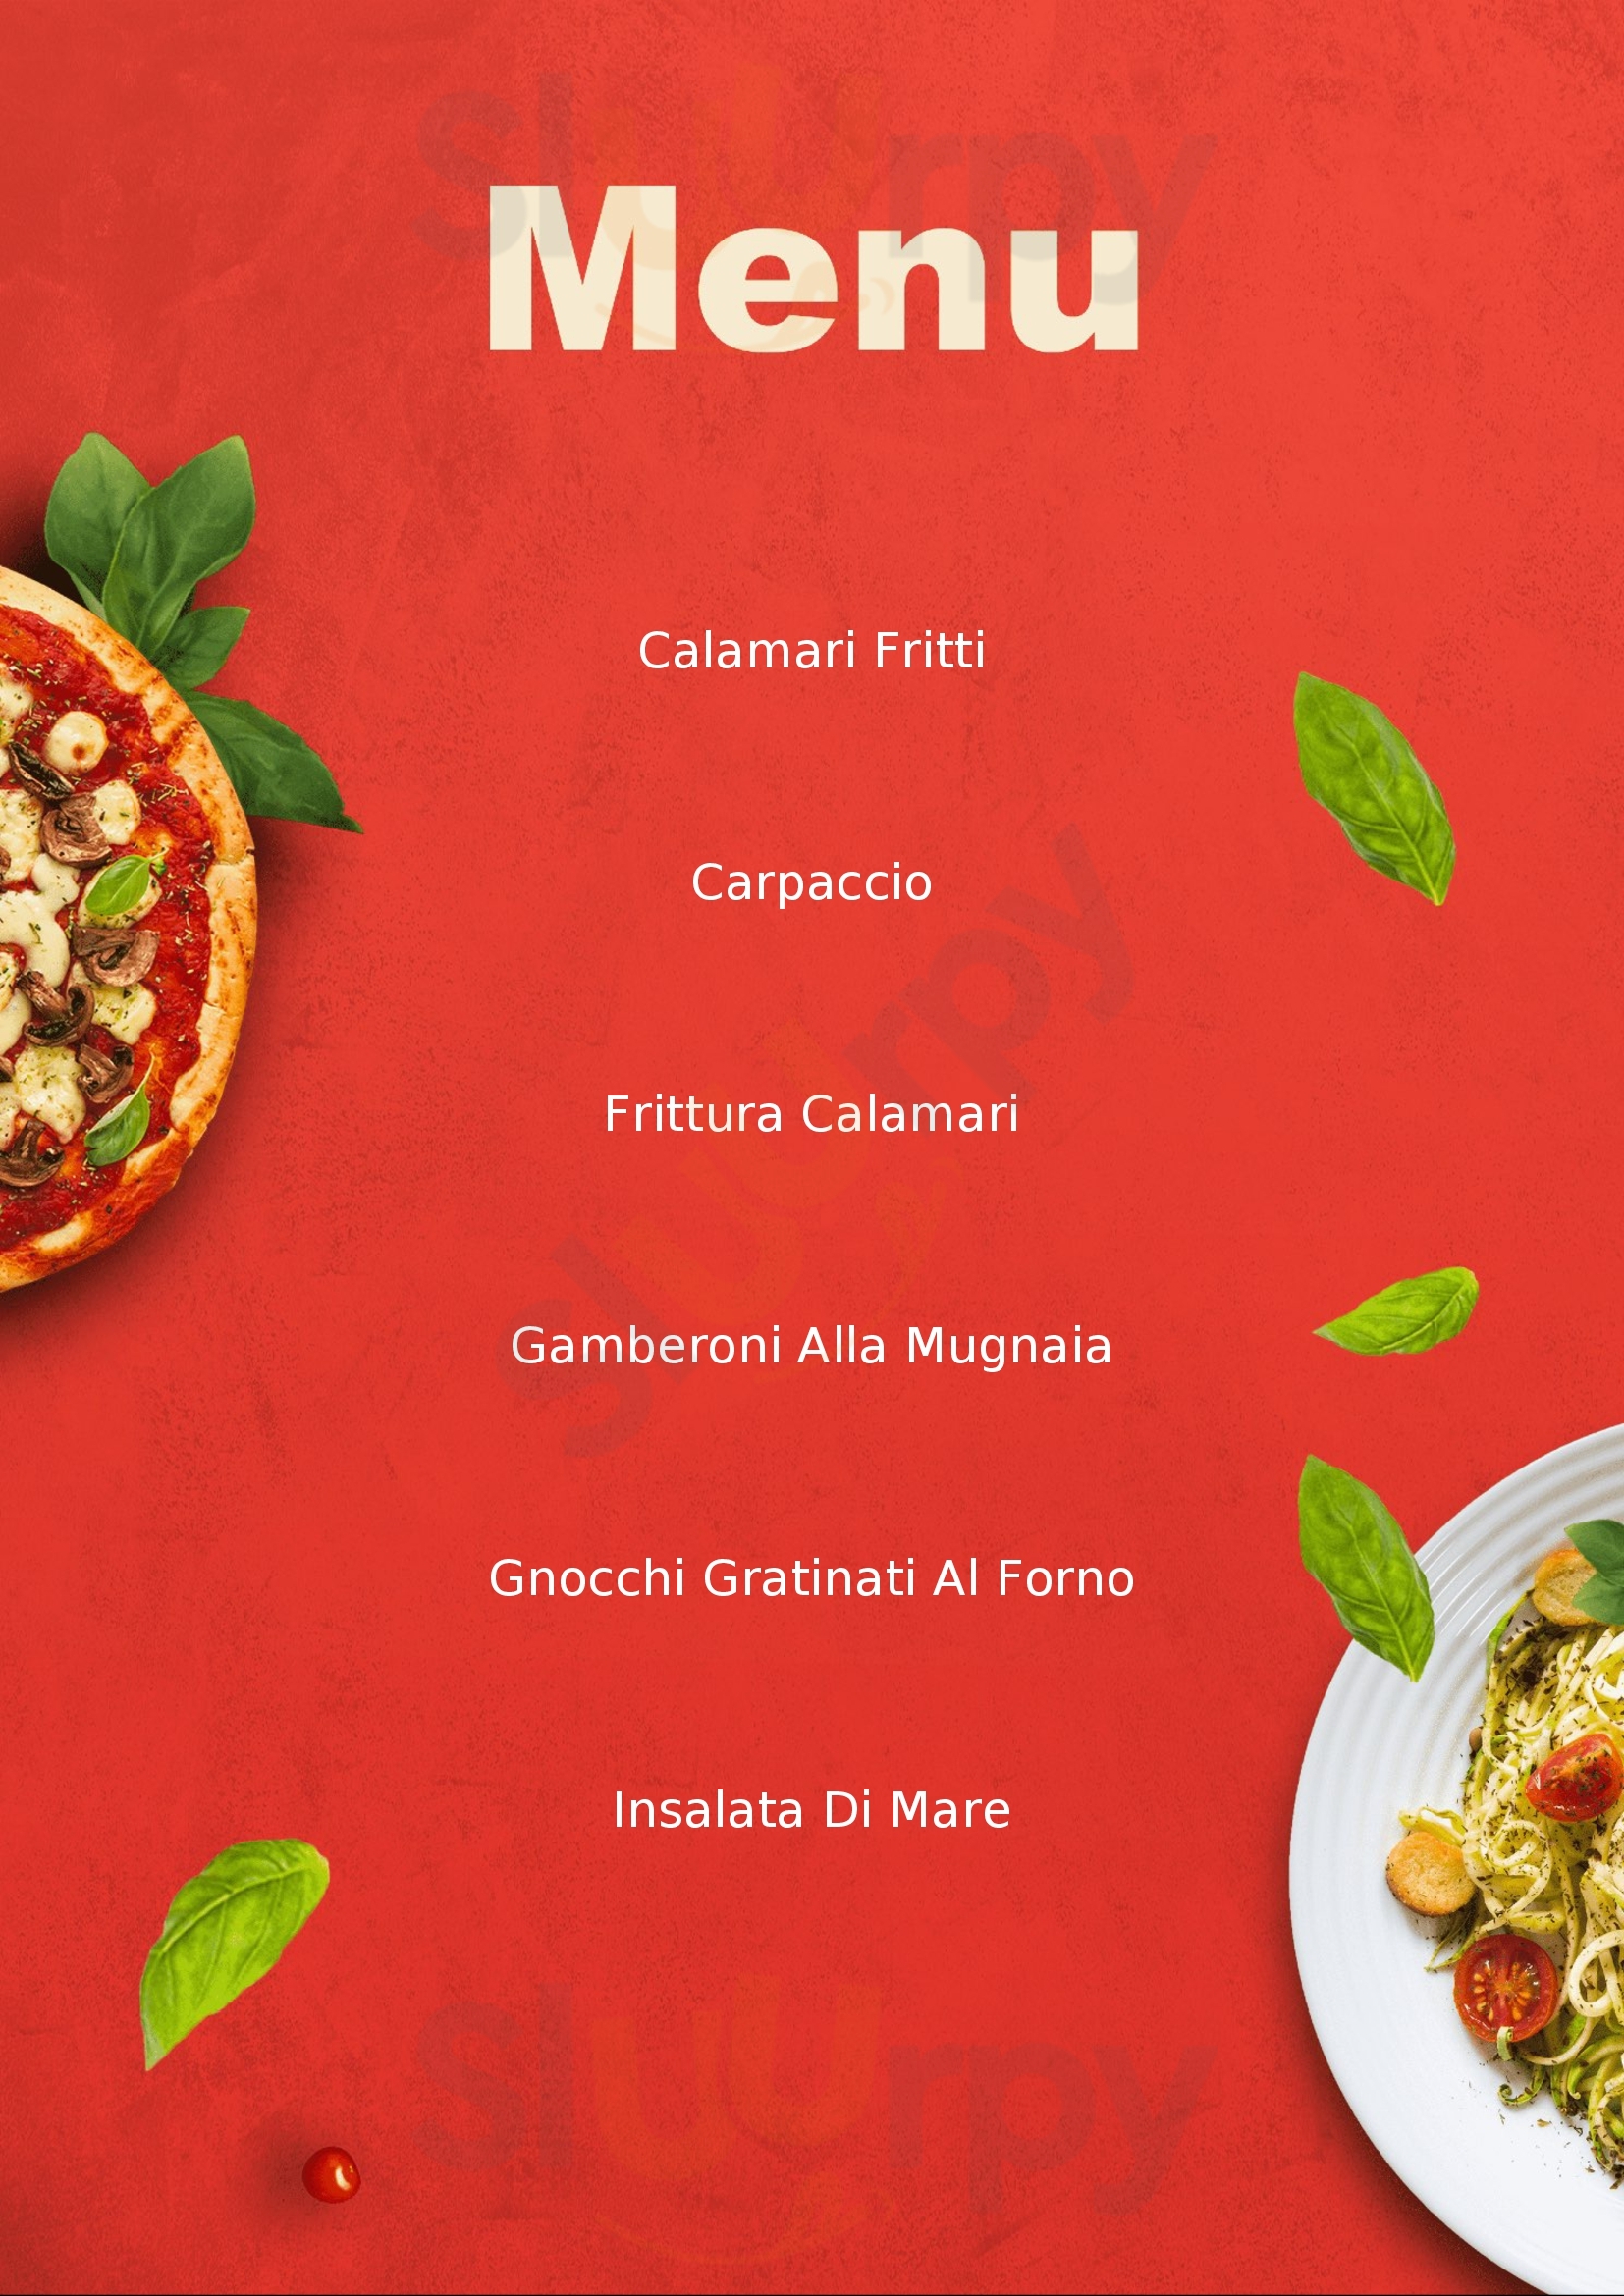 Pizzeria Ristorante la Voce Del Mare Casale Monferrato menù 1 pagina